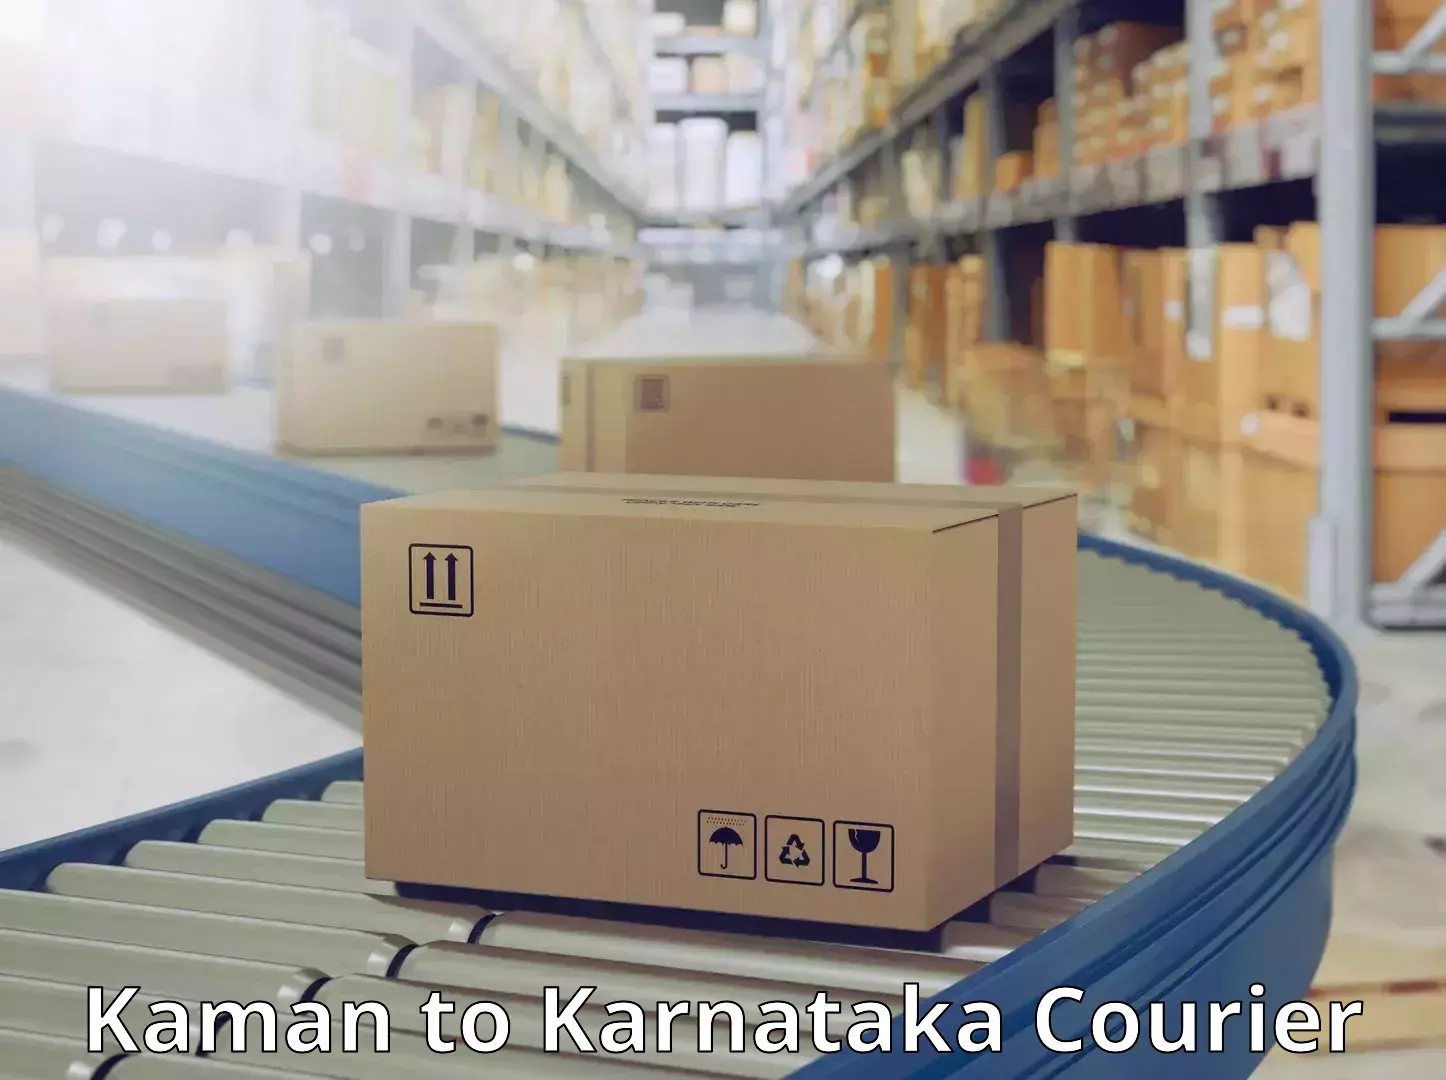 Bulk shipping discounts Kaman to Karnataka